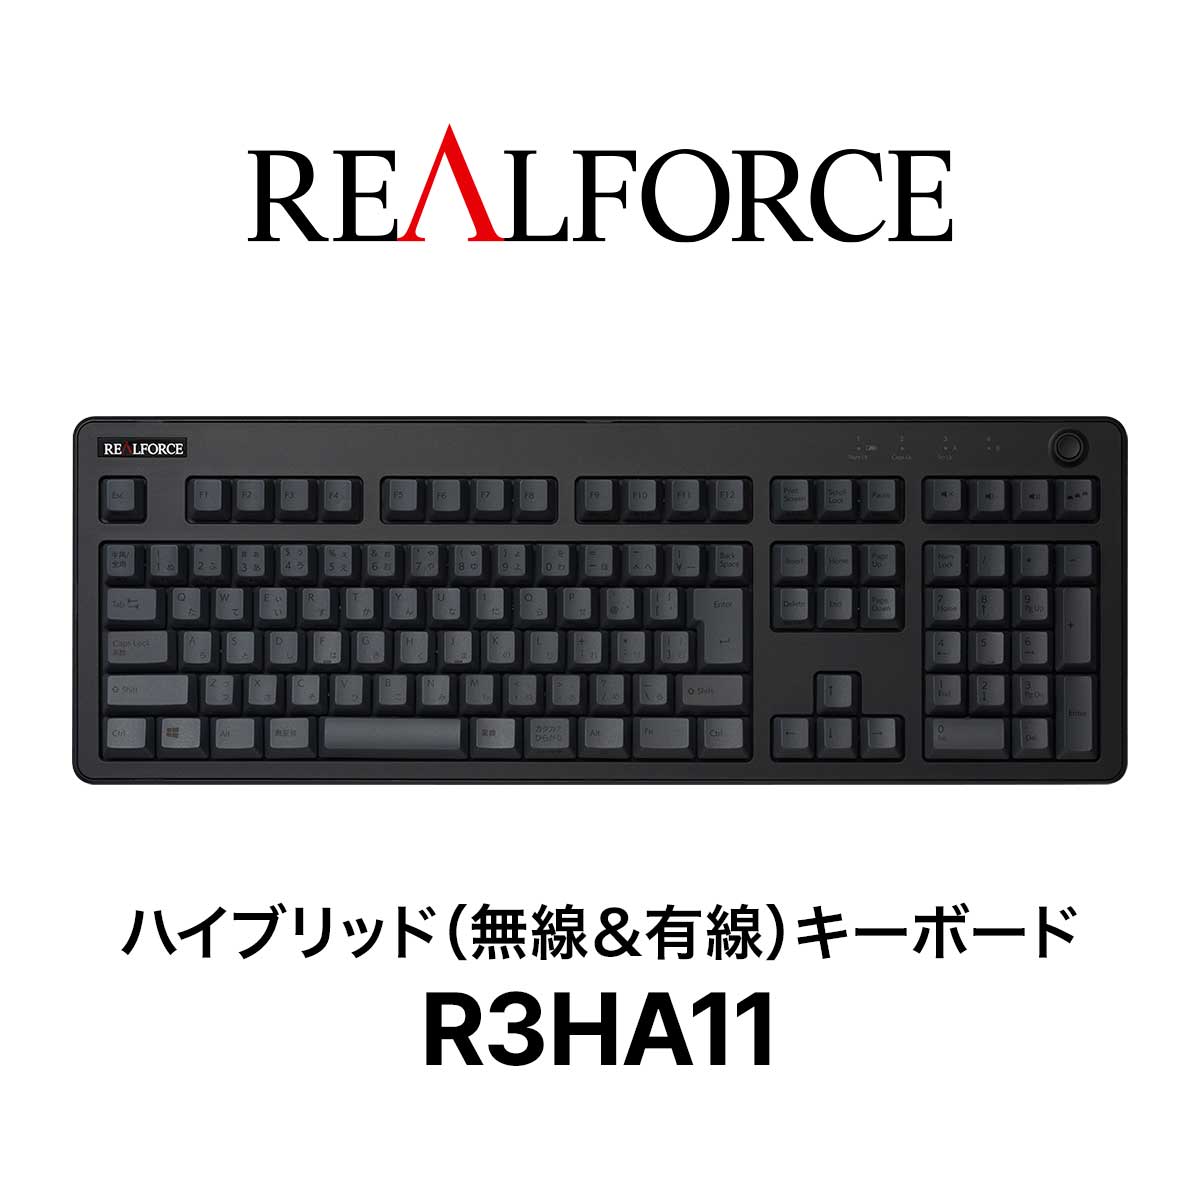 REALFORCE R3 キーボード 45g 日本語配列 フルサイズ ブラック ダークグレー Bluetooth USB 静音 昇華印刷 ワイヤレス ハイブリッドモデル 無線 東プレ リアルフォース R3HA11 